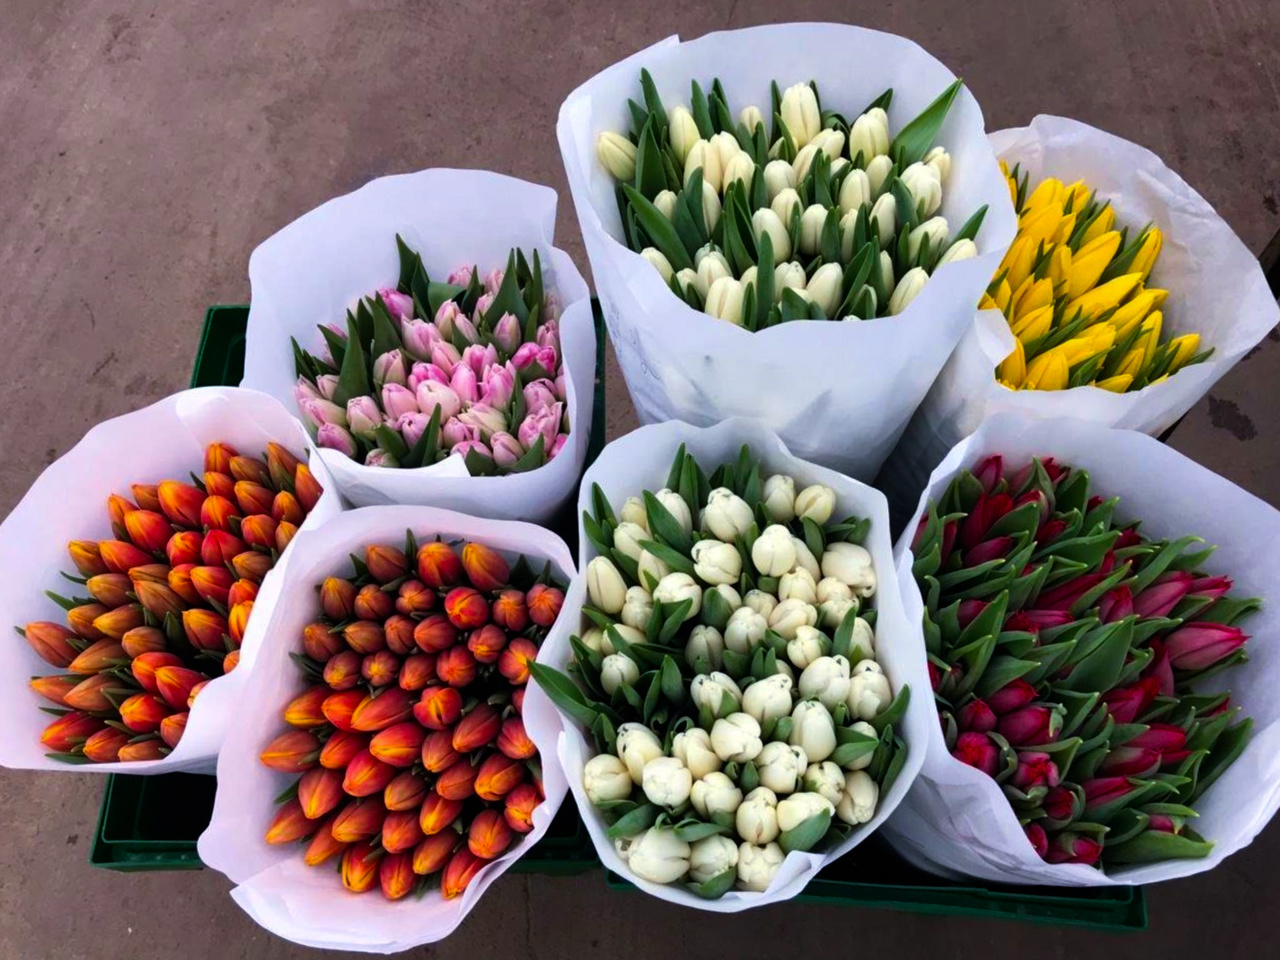 Как быстро и удобно заказать доставку свежих тюльпанов?